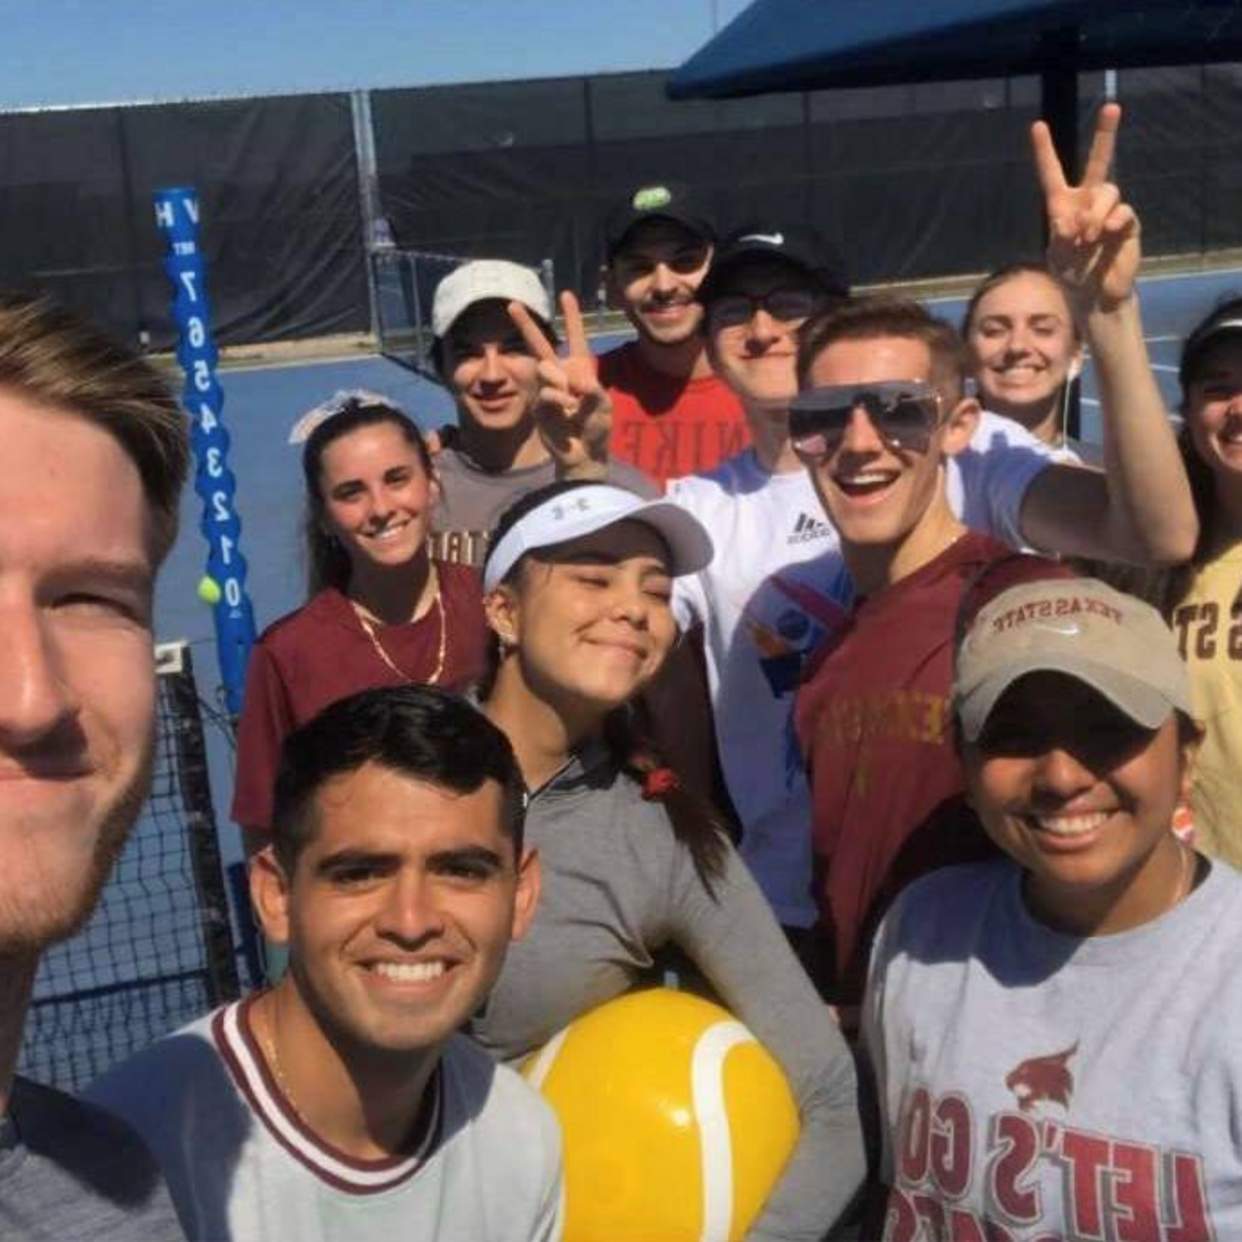 Tennis group selfie